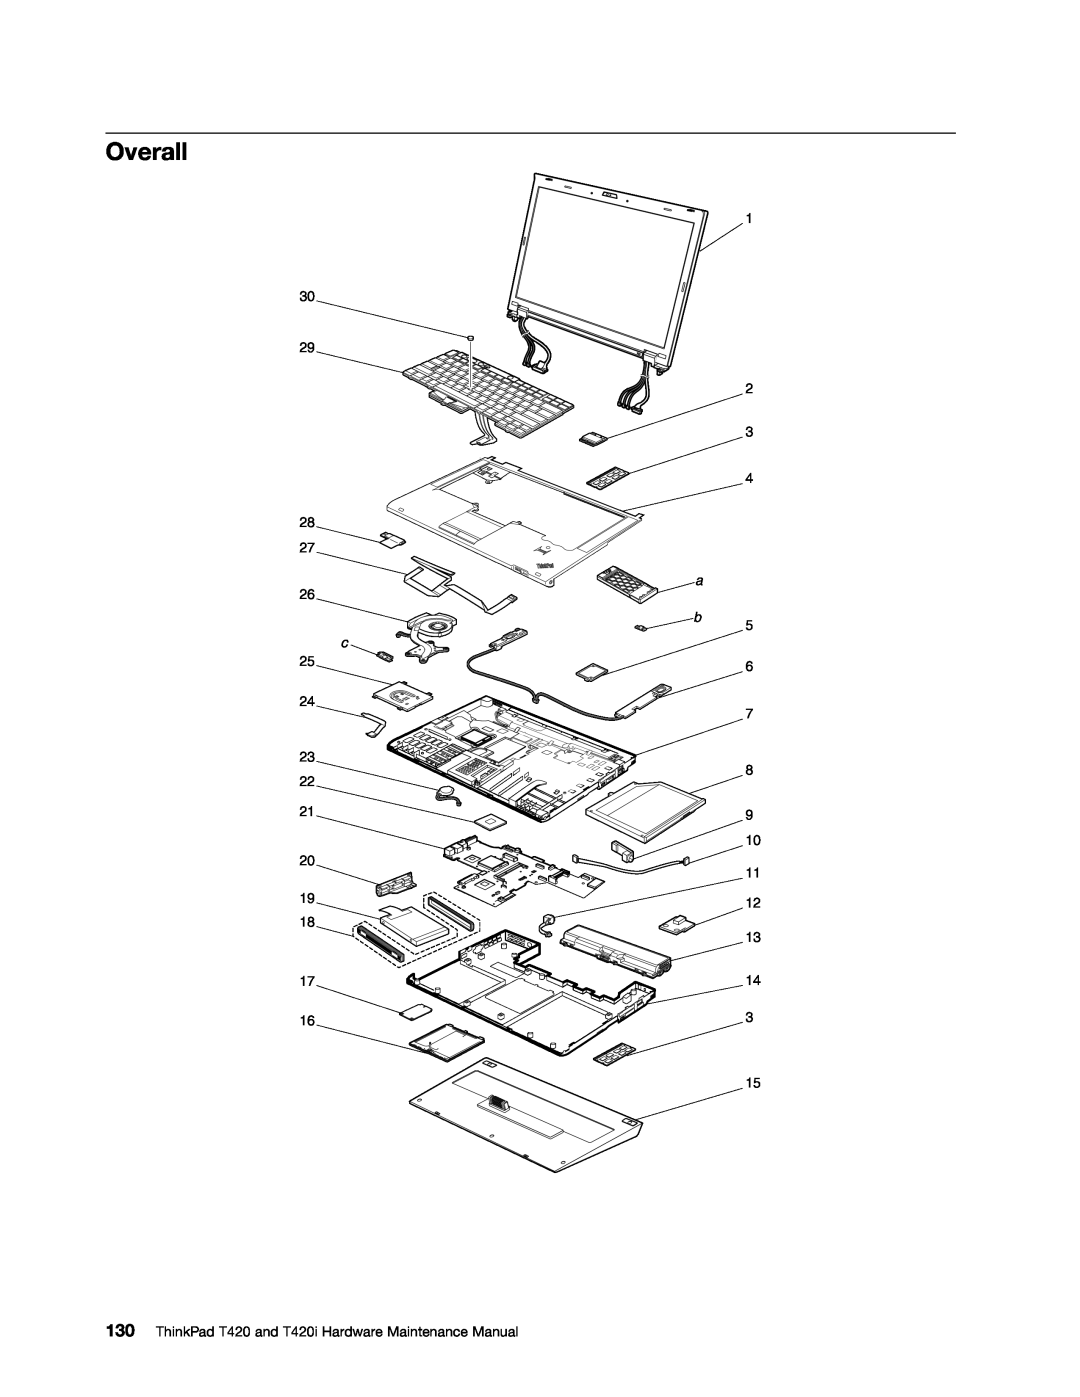 Lenovo manual Overall, ThinkPad T420 and T420i Hardware Maintenance Manual 